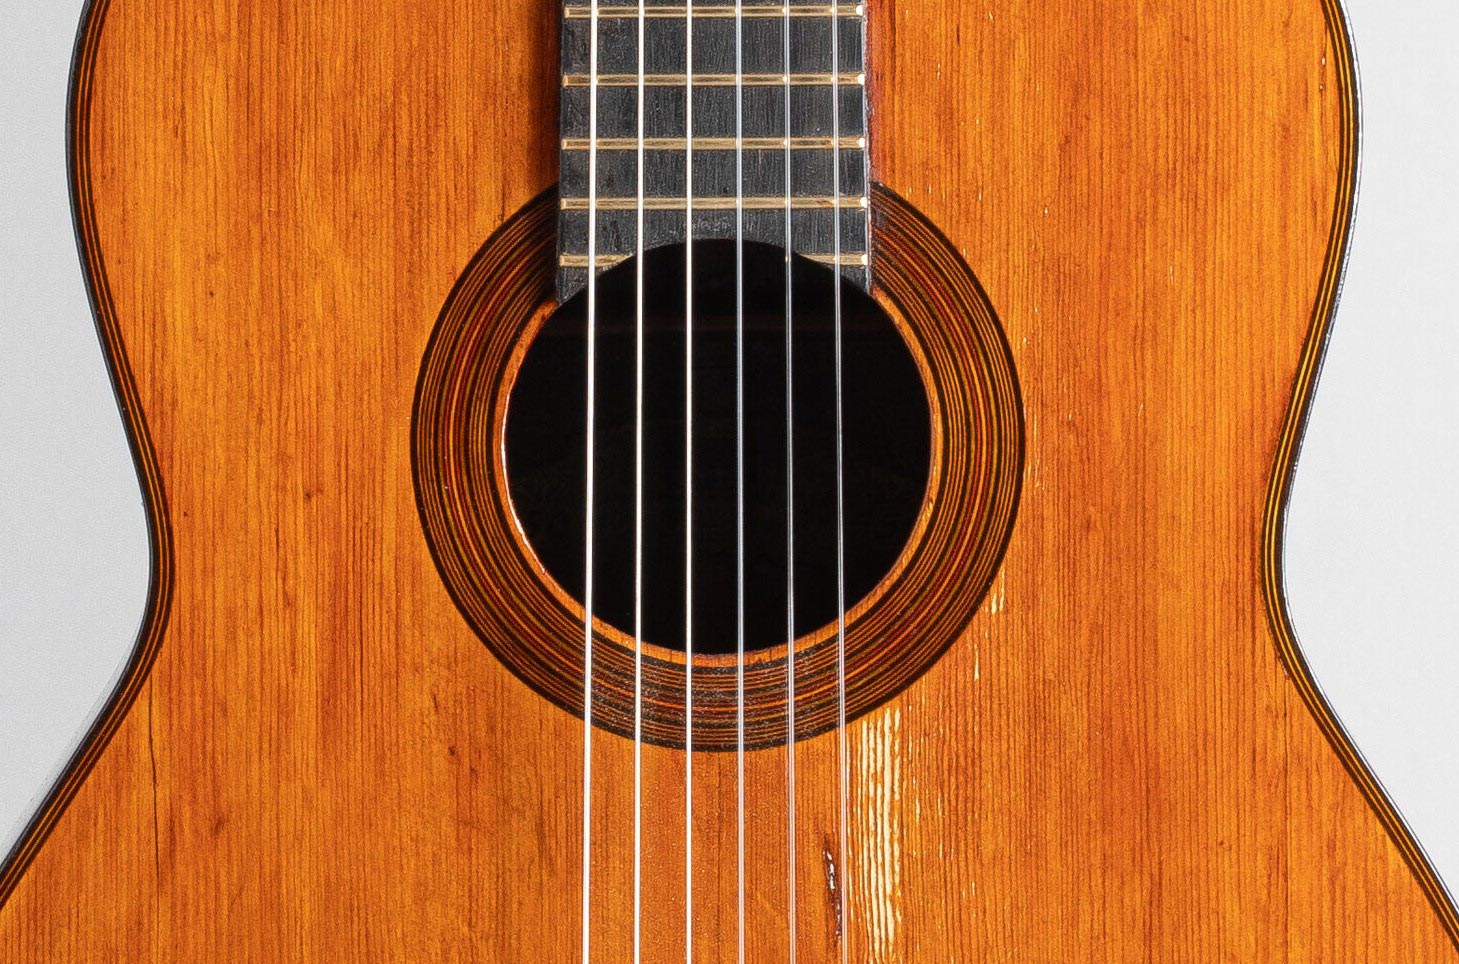 Guitare de marque SELMER, modèle Classique n° 550, faite en 1942, rosace, Vichy Enchères, 5 novembre 2022